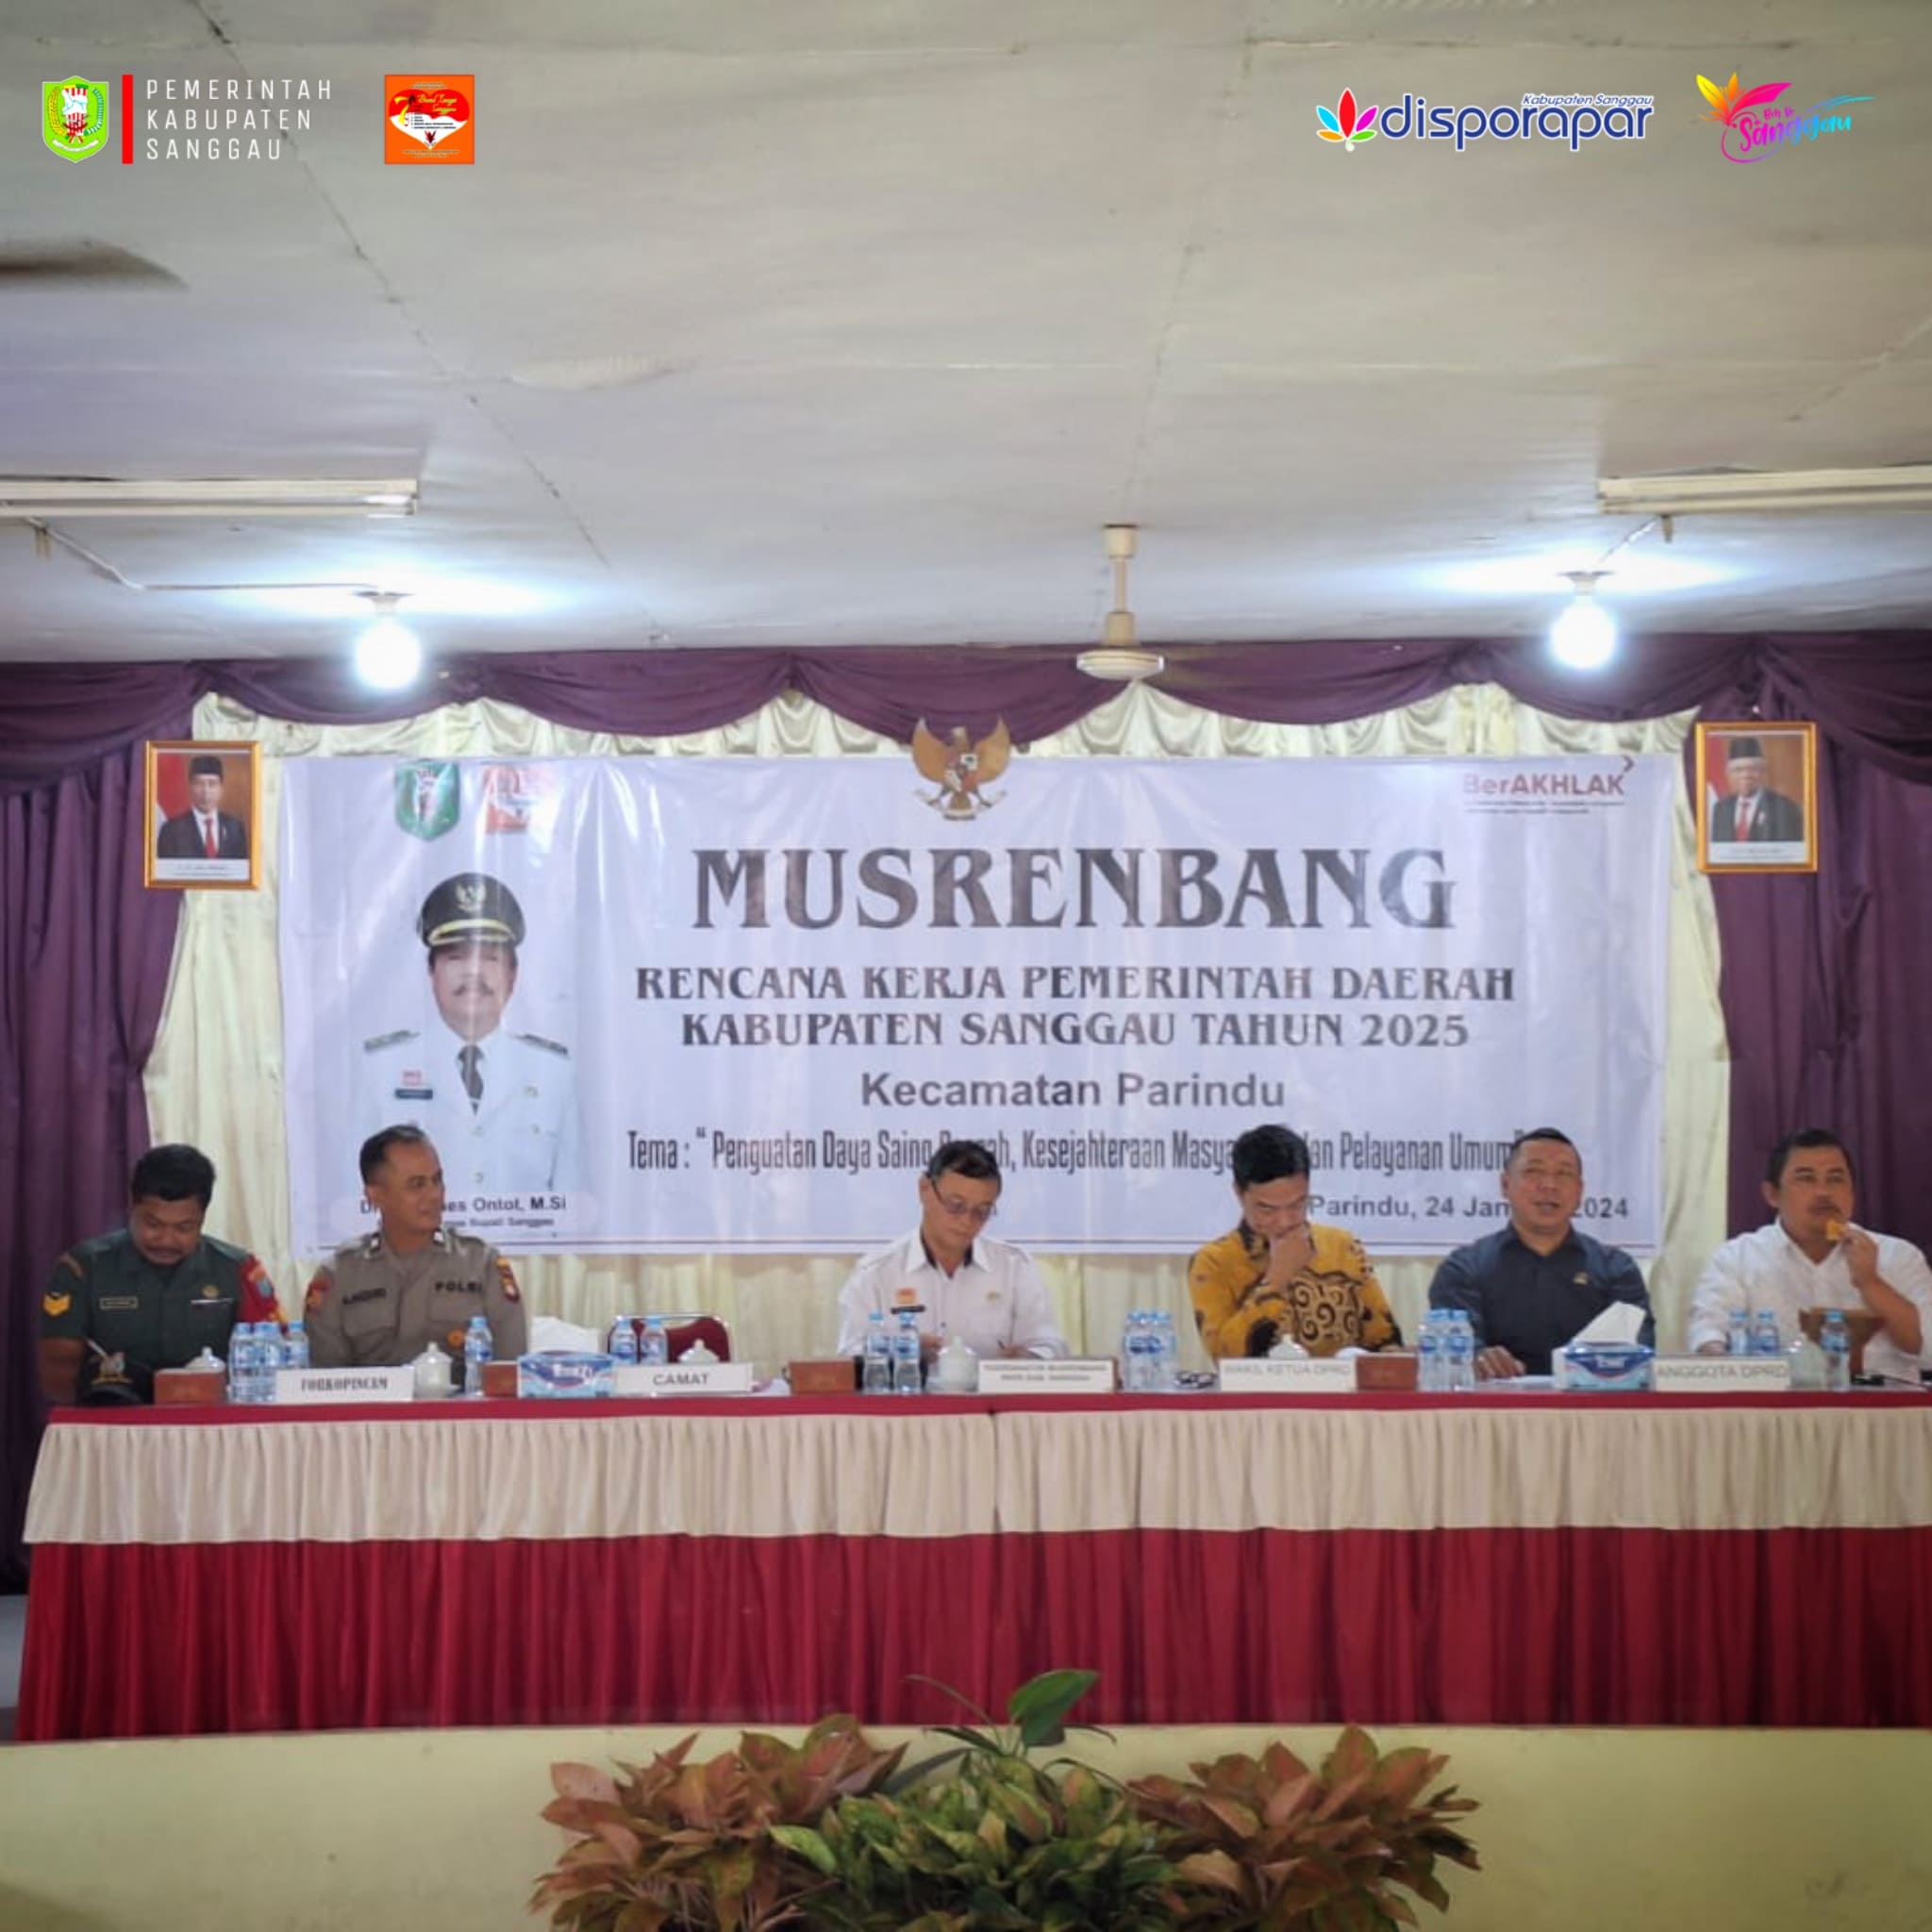 Dinas Porapar kab. Sanggau melaksanakan Musrenbang RKPD 2024 – DISPORAPAR